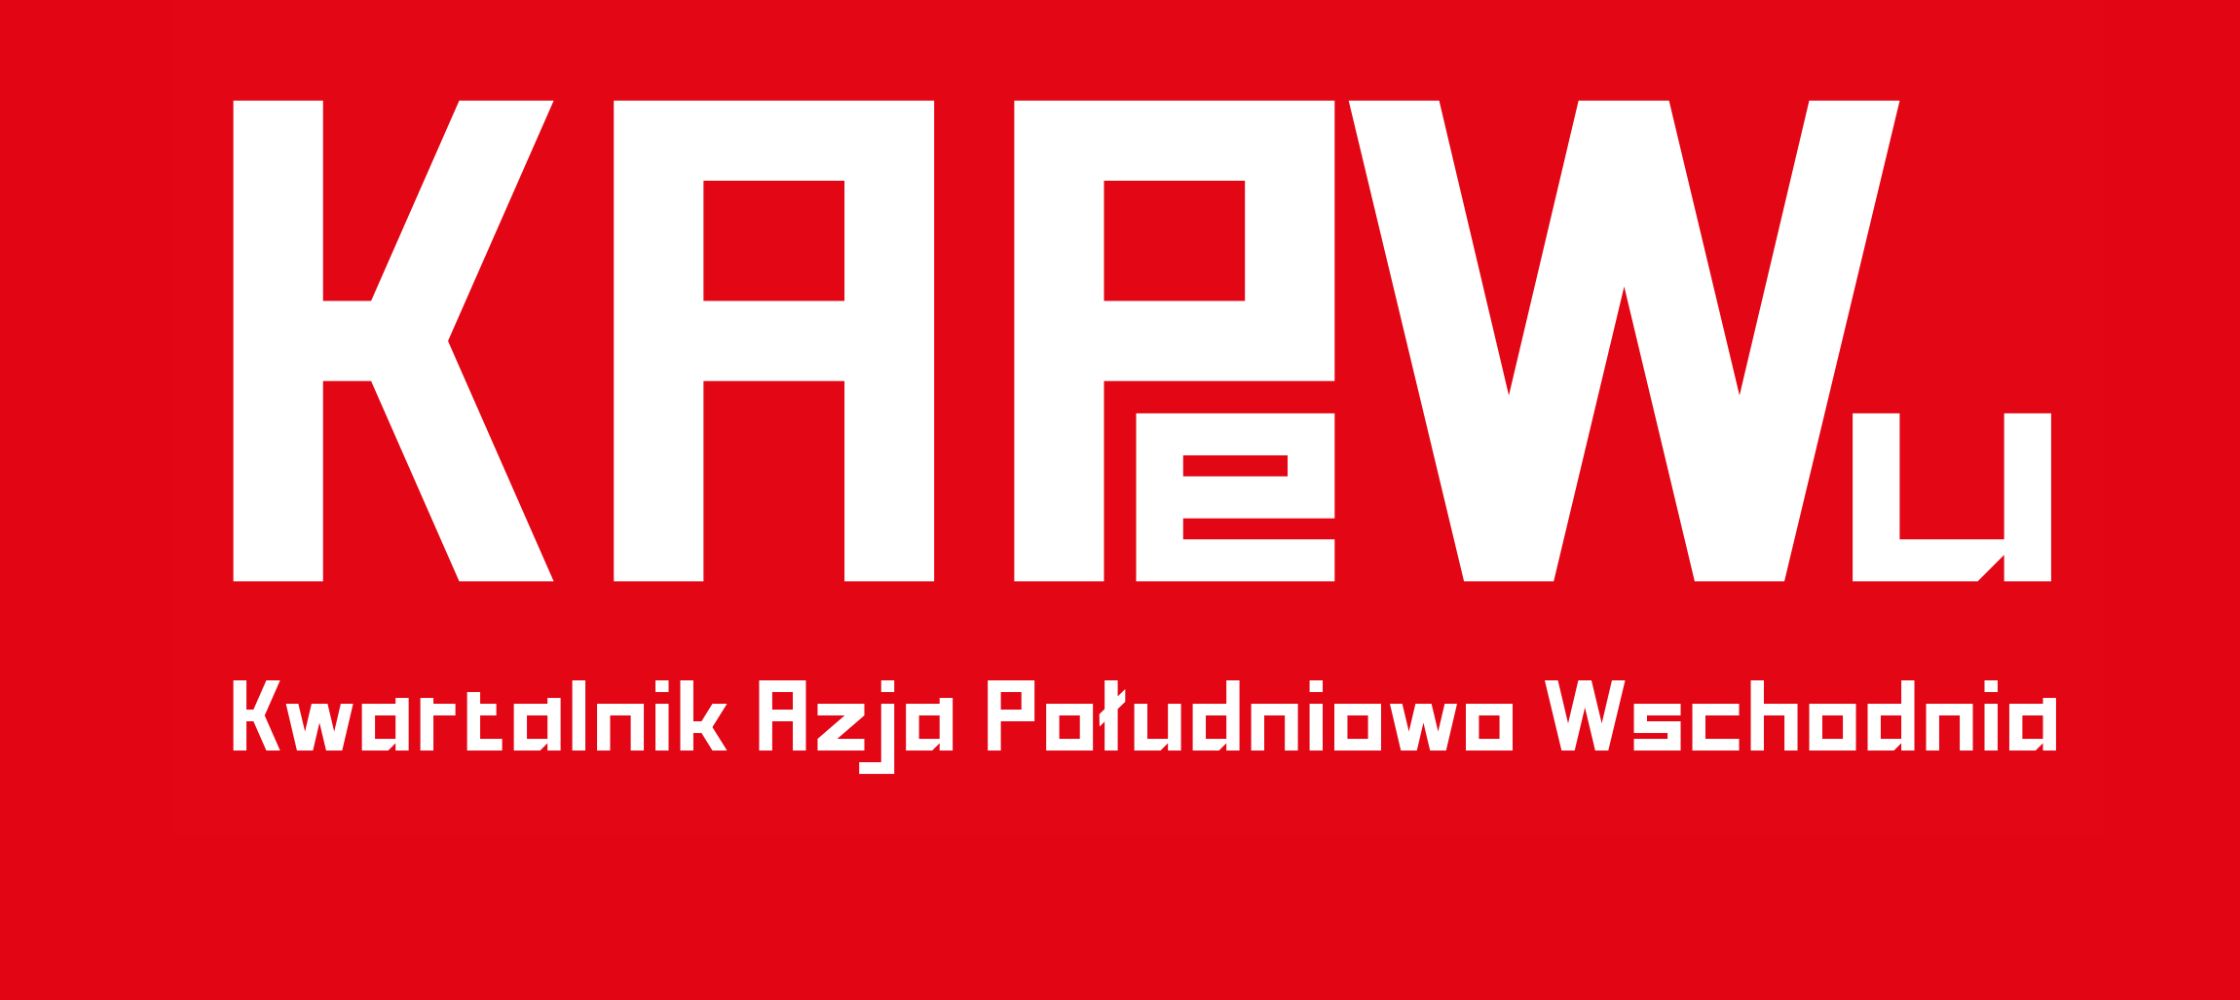 UWAGA – Pierwszy polski Periodyk z & o Regionie Azji południowo wschodniej.